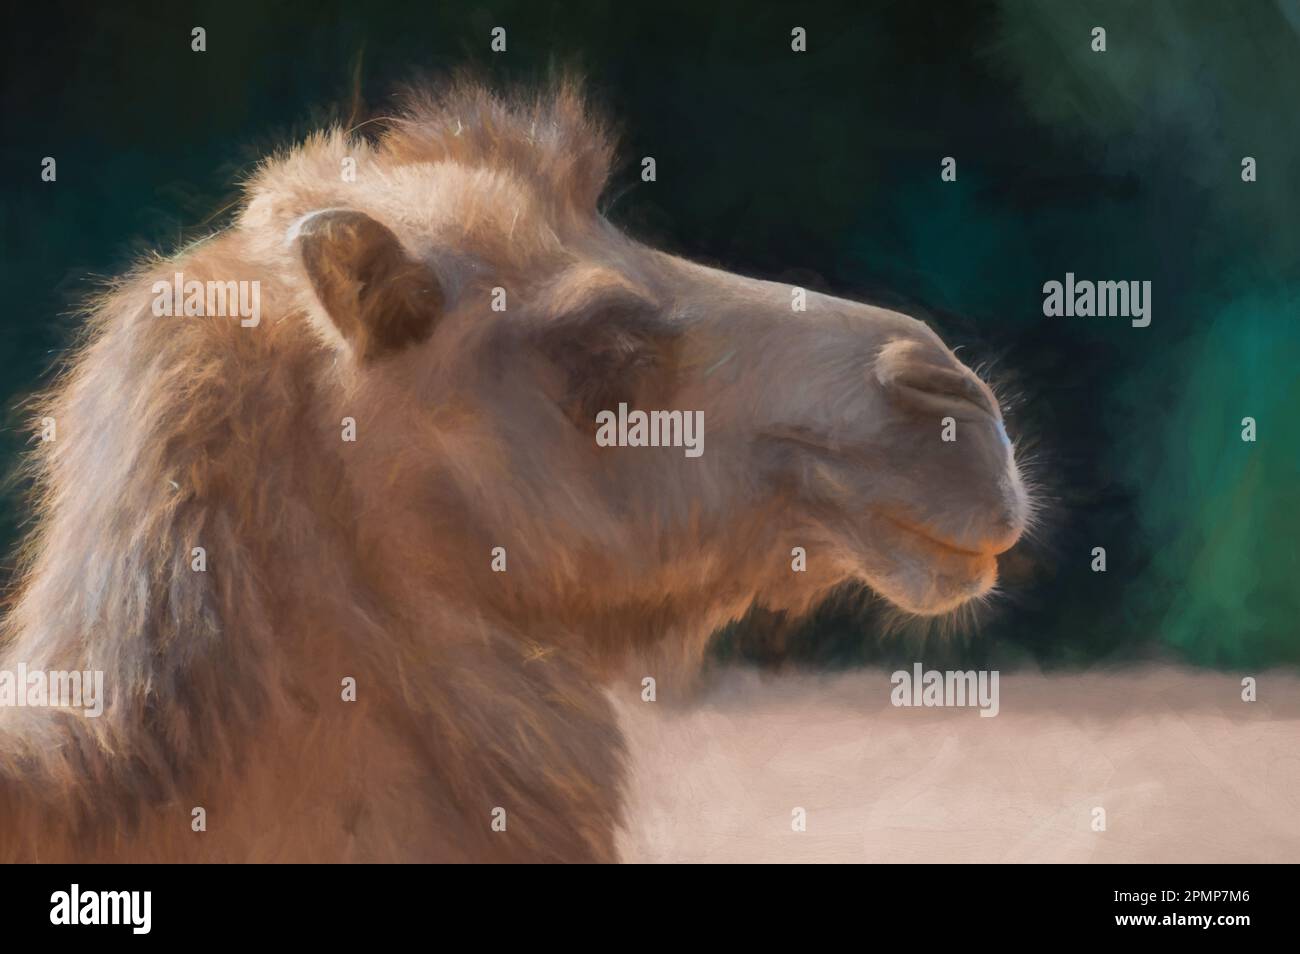 Peinture numérique d'une image rapprochée d'un chameau captif de Bactrian au zoo, avec un arrière-plan flou. Banque D'Images